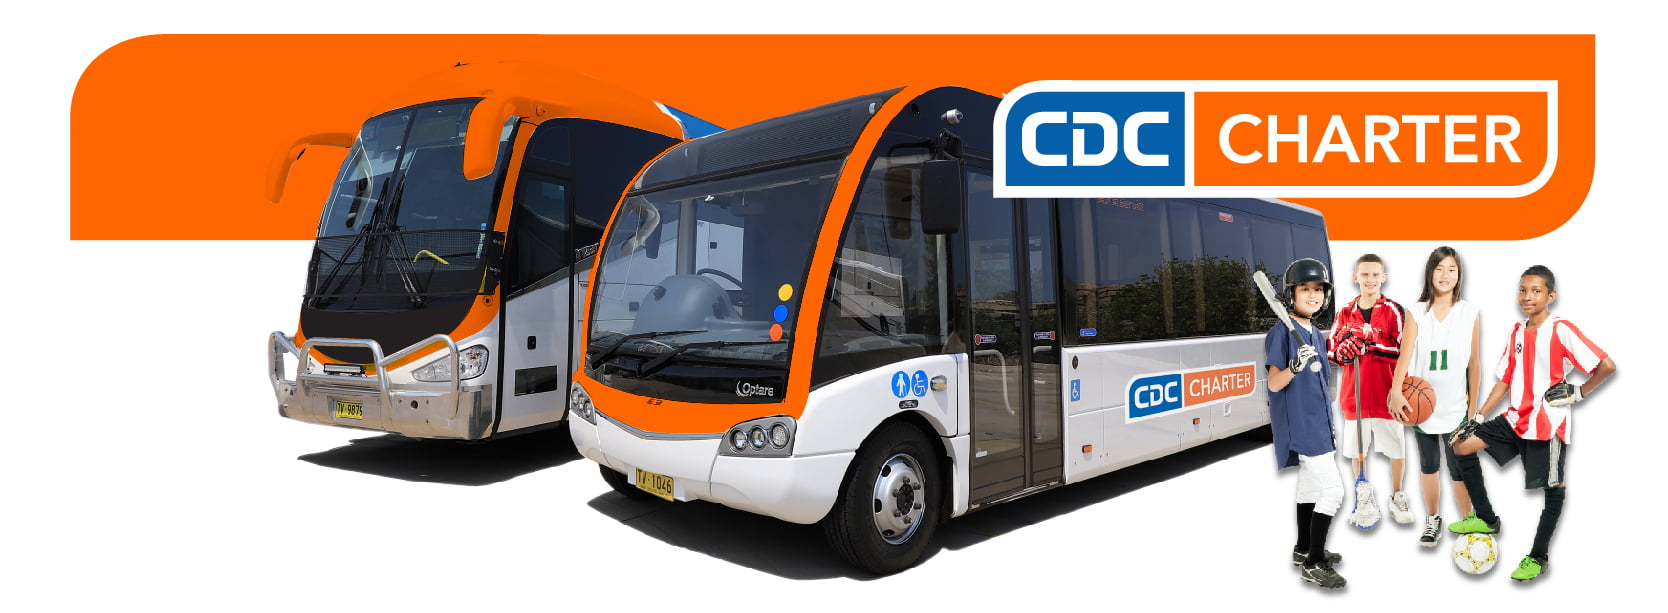 CDC Charter Buses